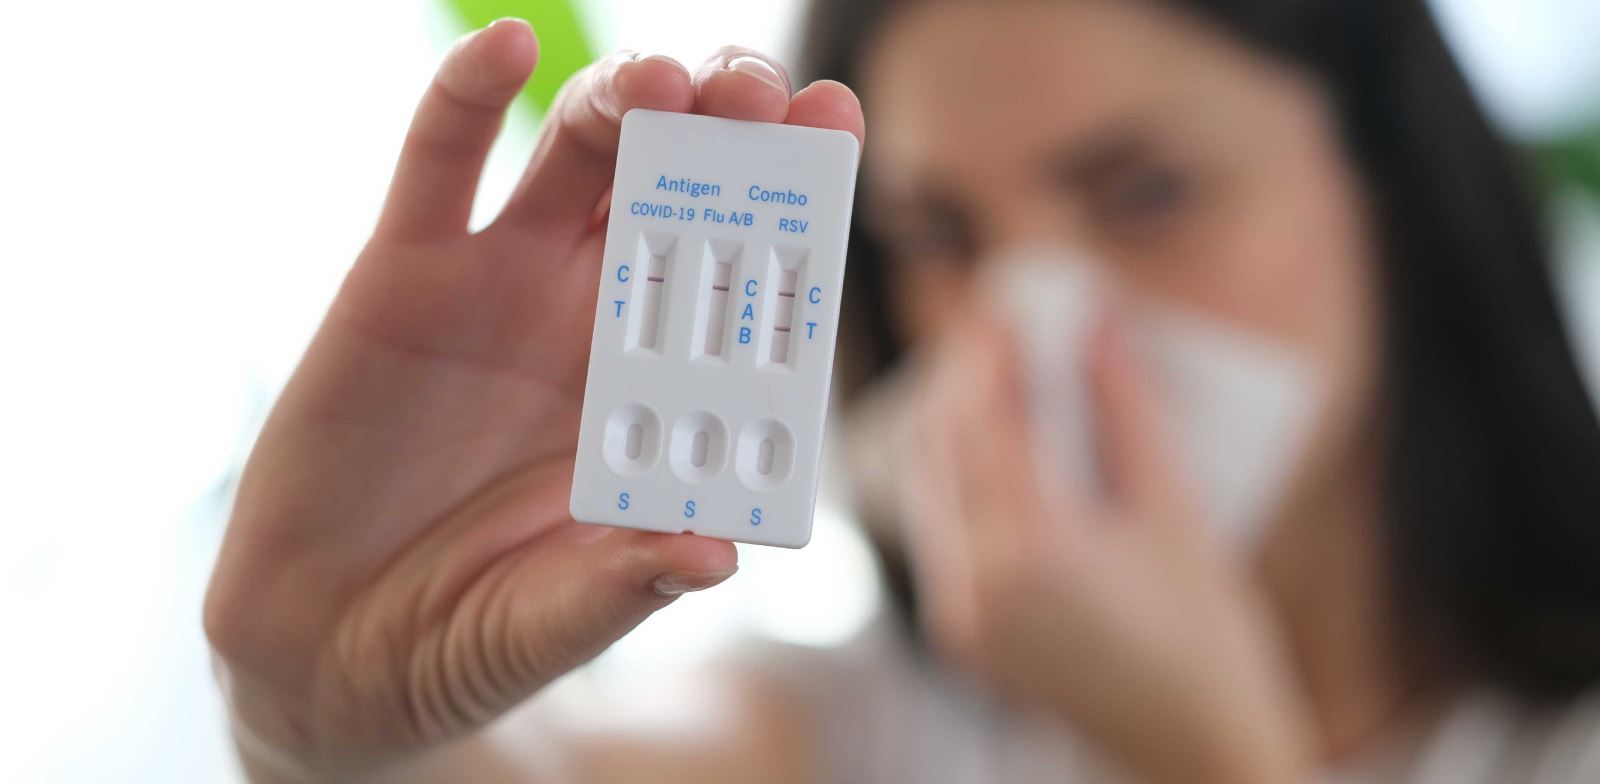 İnfluenza testi için antijen testler ve PCR testi kullanılır.